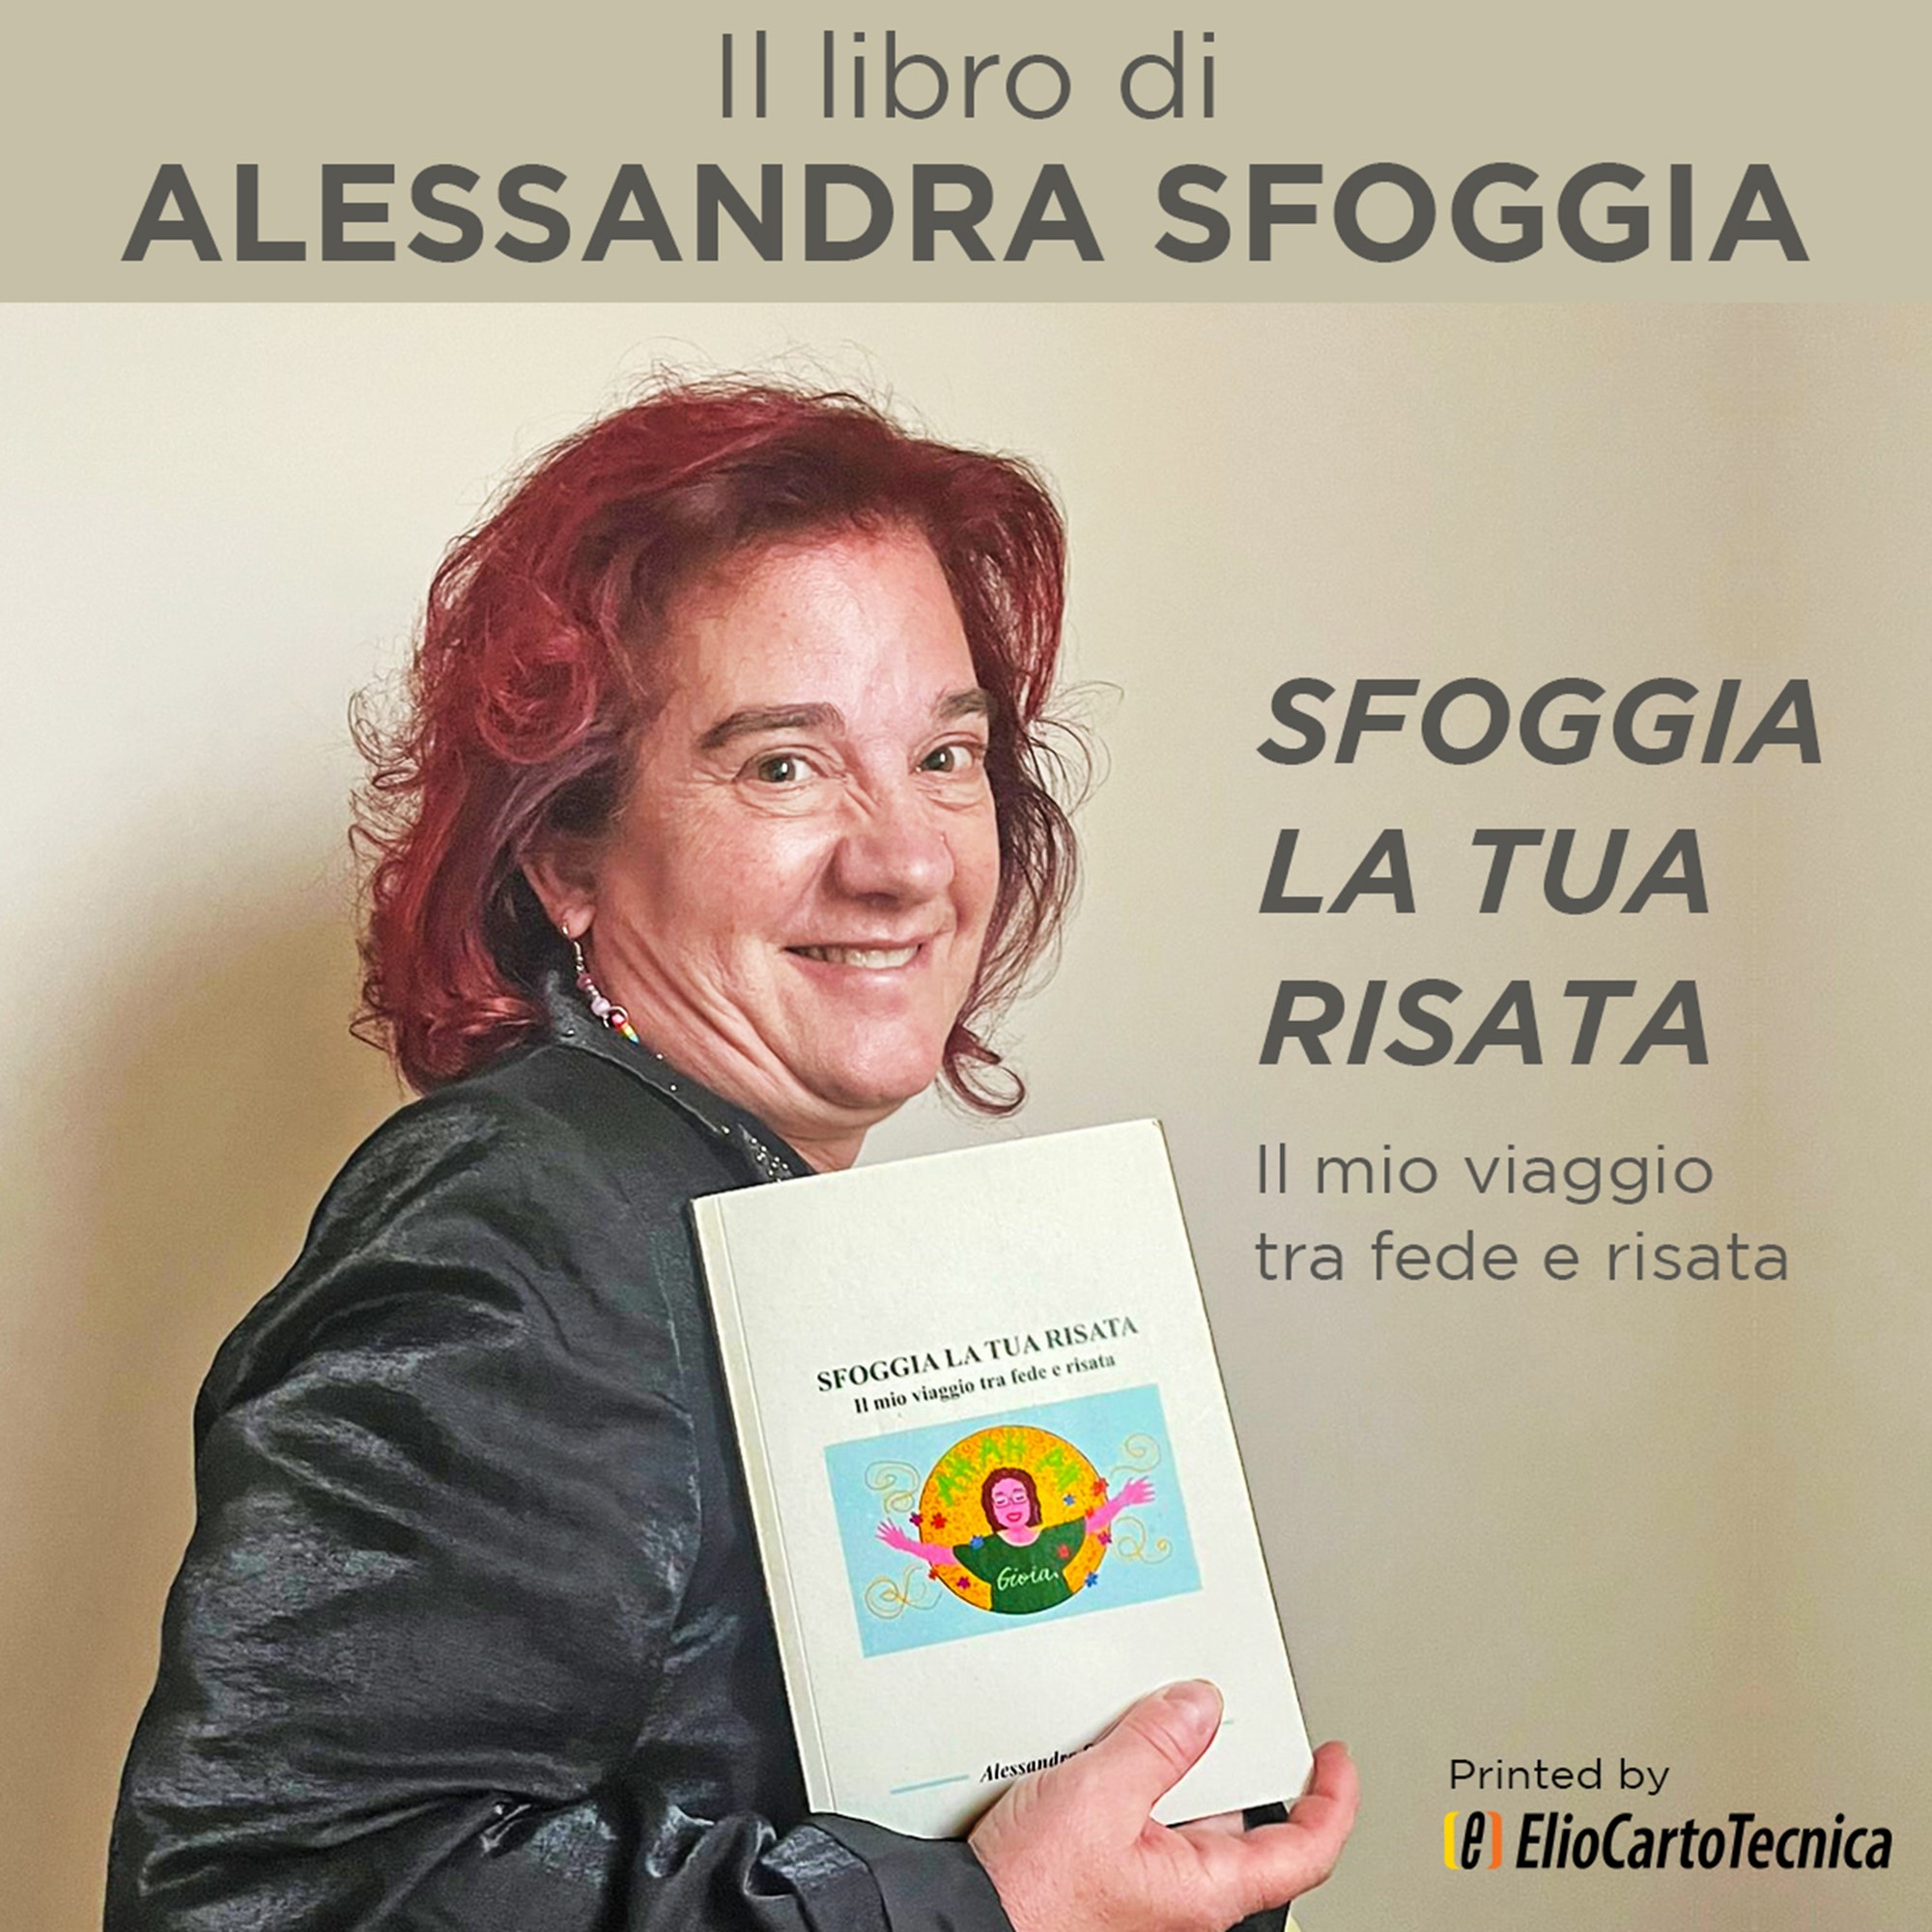 Alessandra Sfoggia ha scelto ElioCartoTecnica per la stampa del suo libro